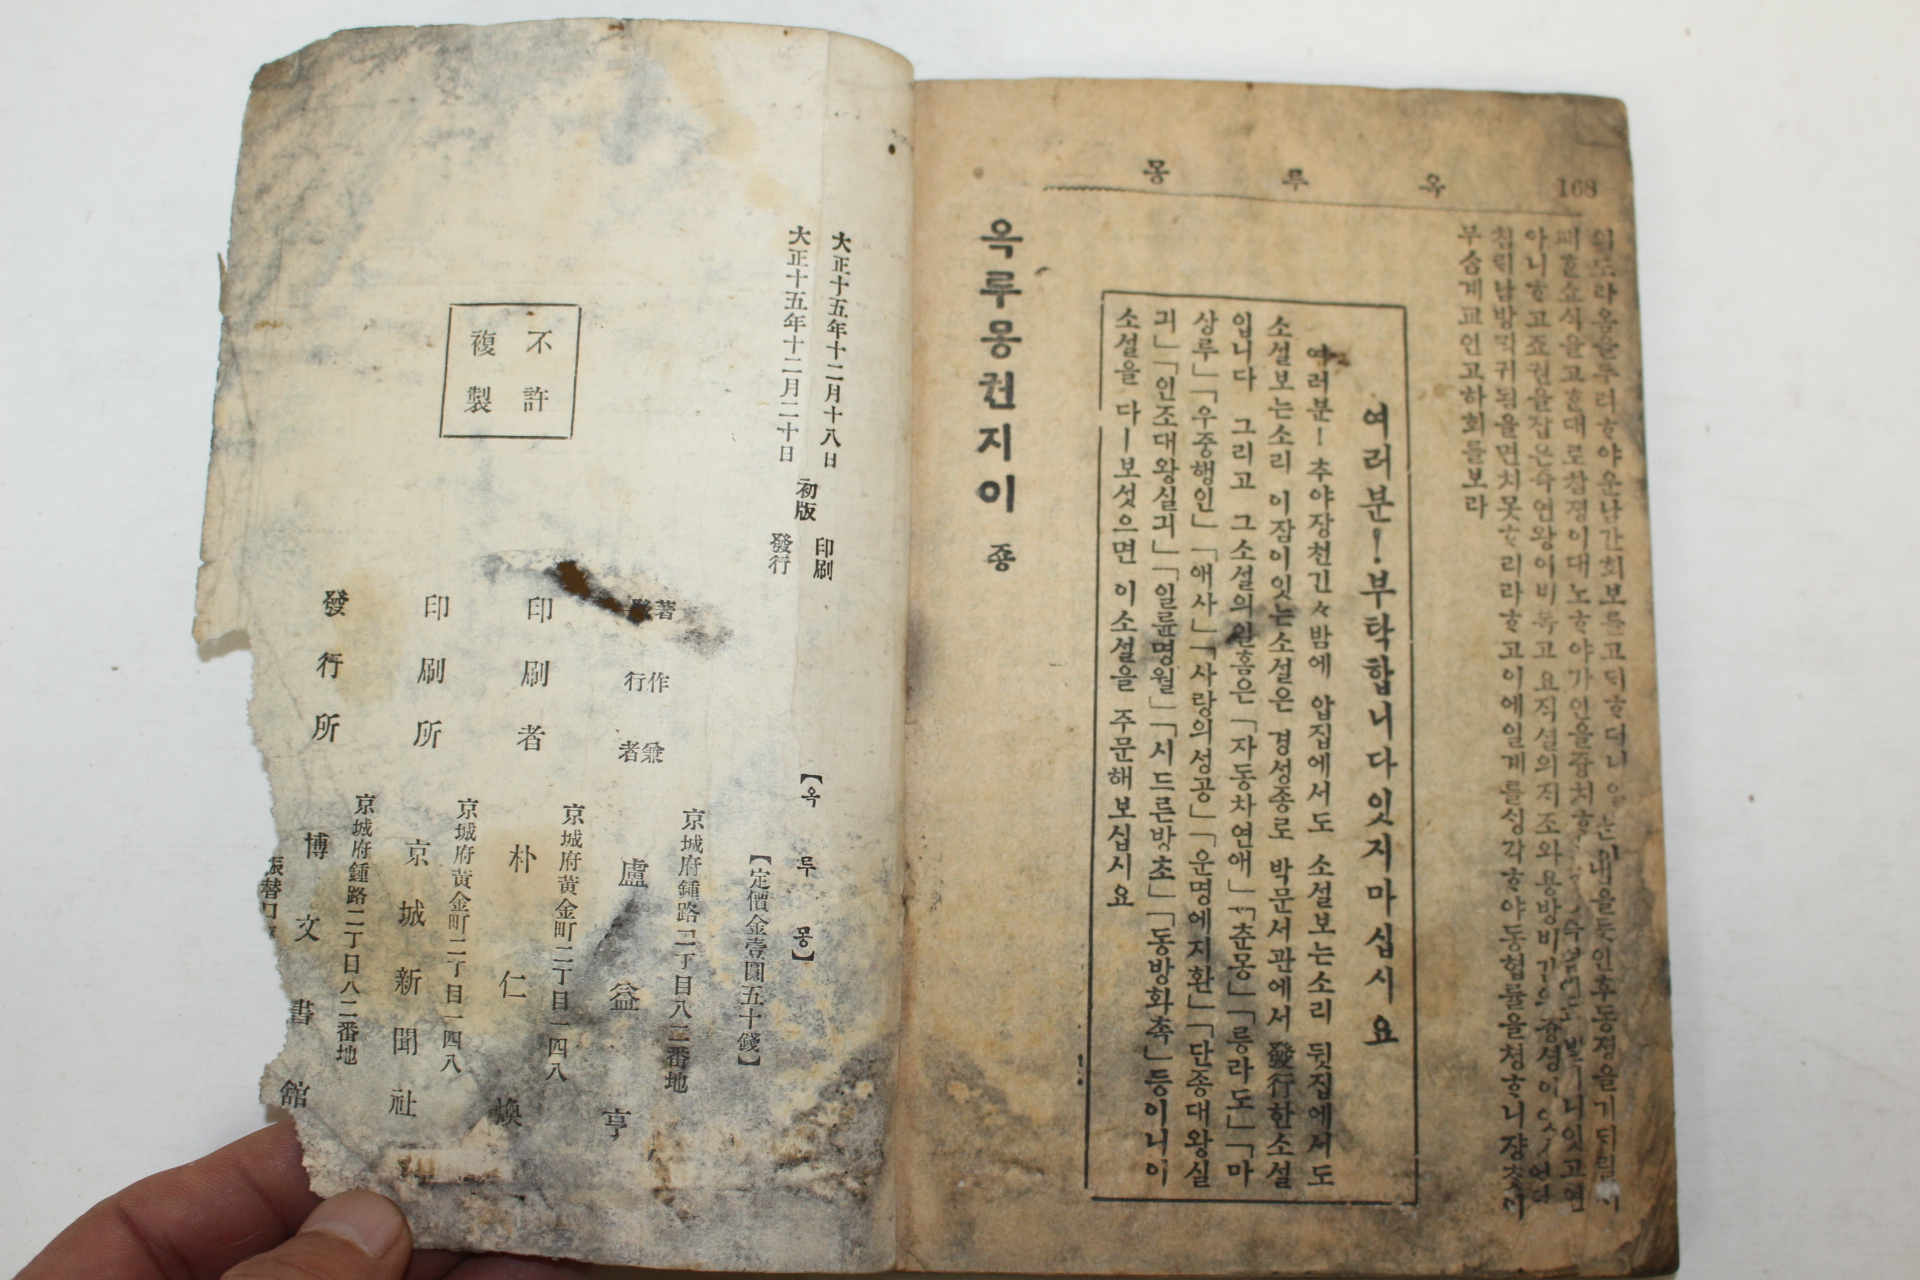 1926년 박문서관 원본한문언토 옥루몽(玉樓夢) 2권